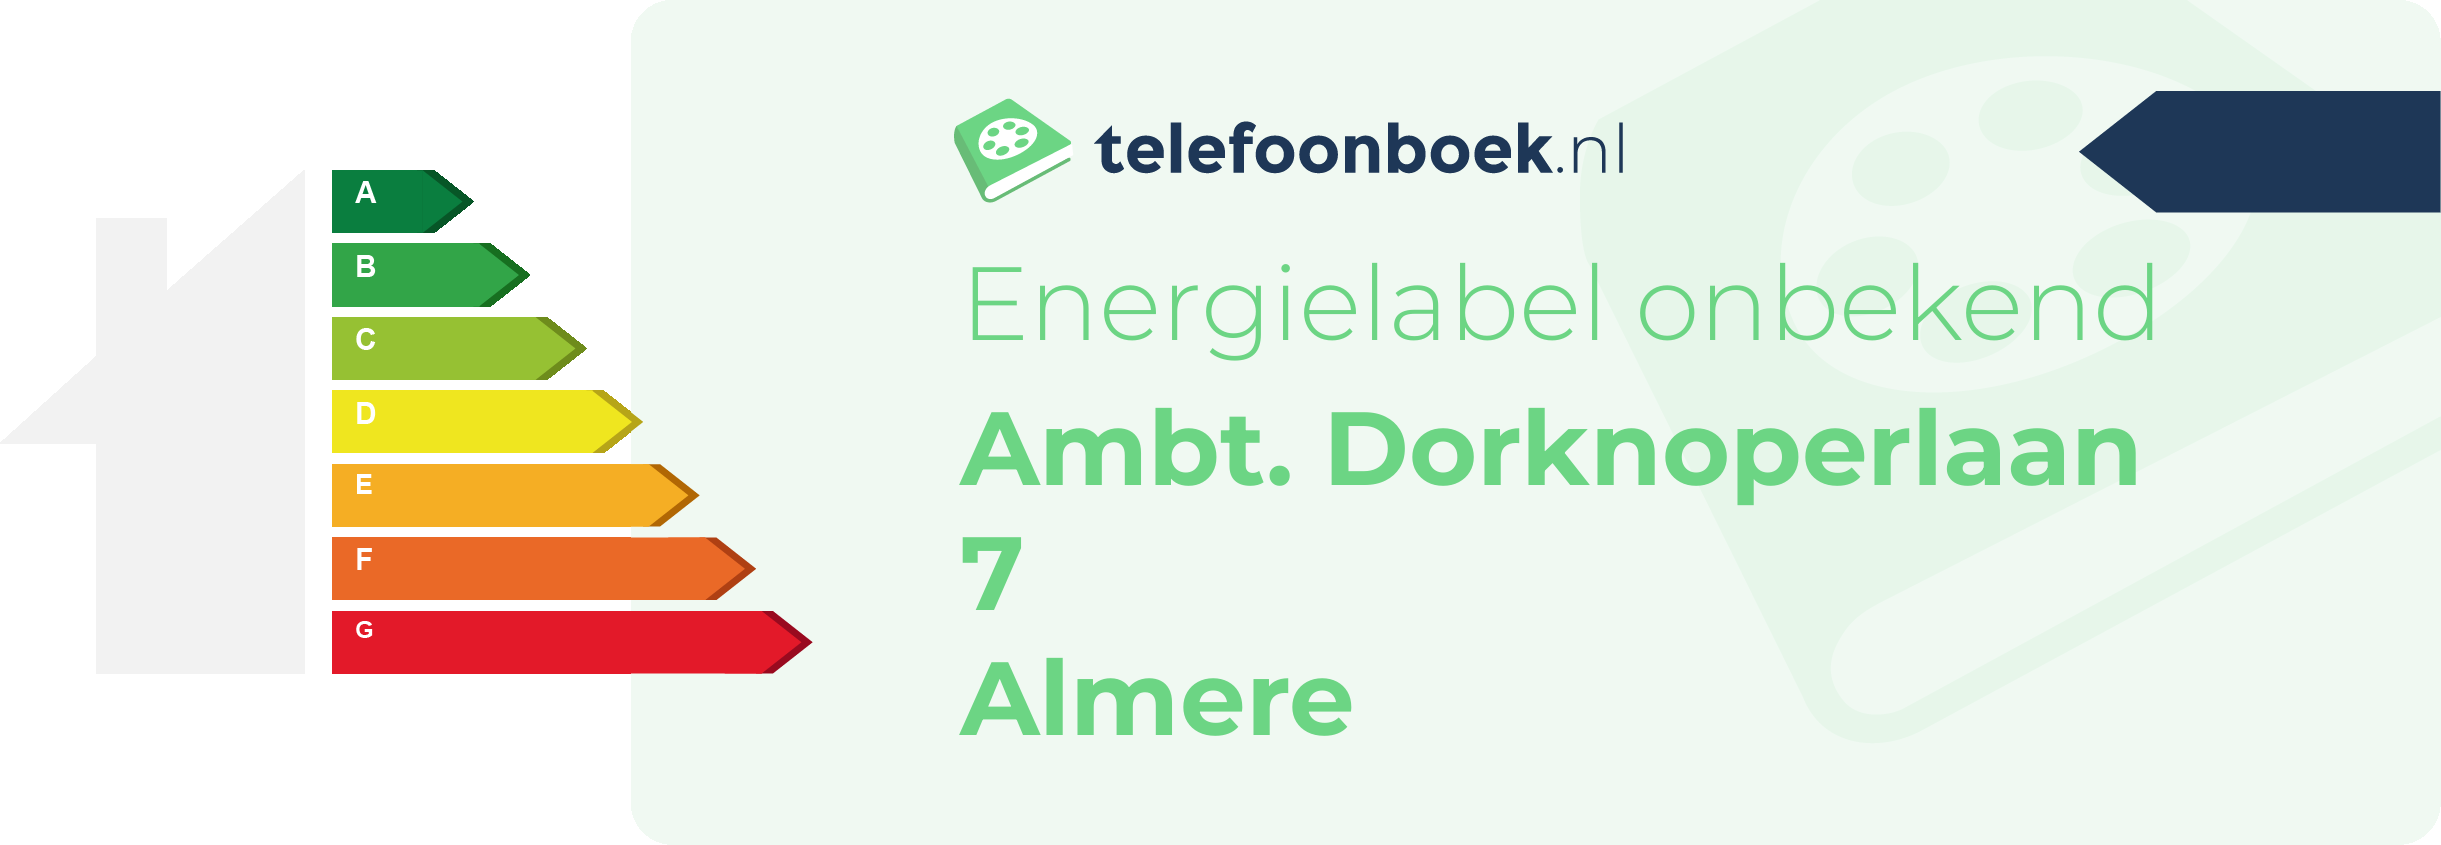 Energielabel Ambt. Dorknoperlaan 7 Almere